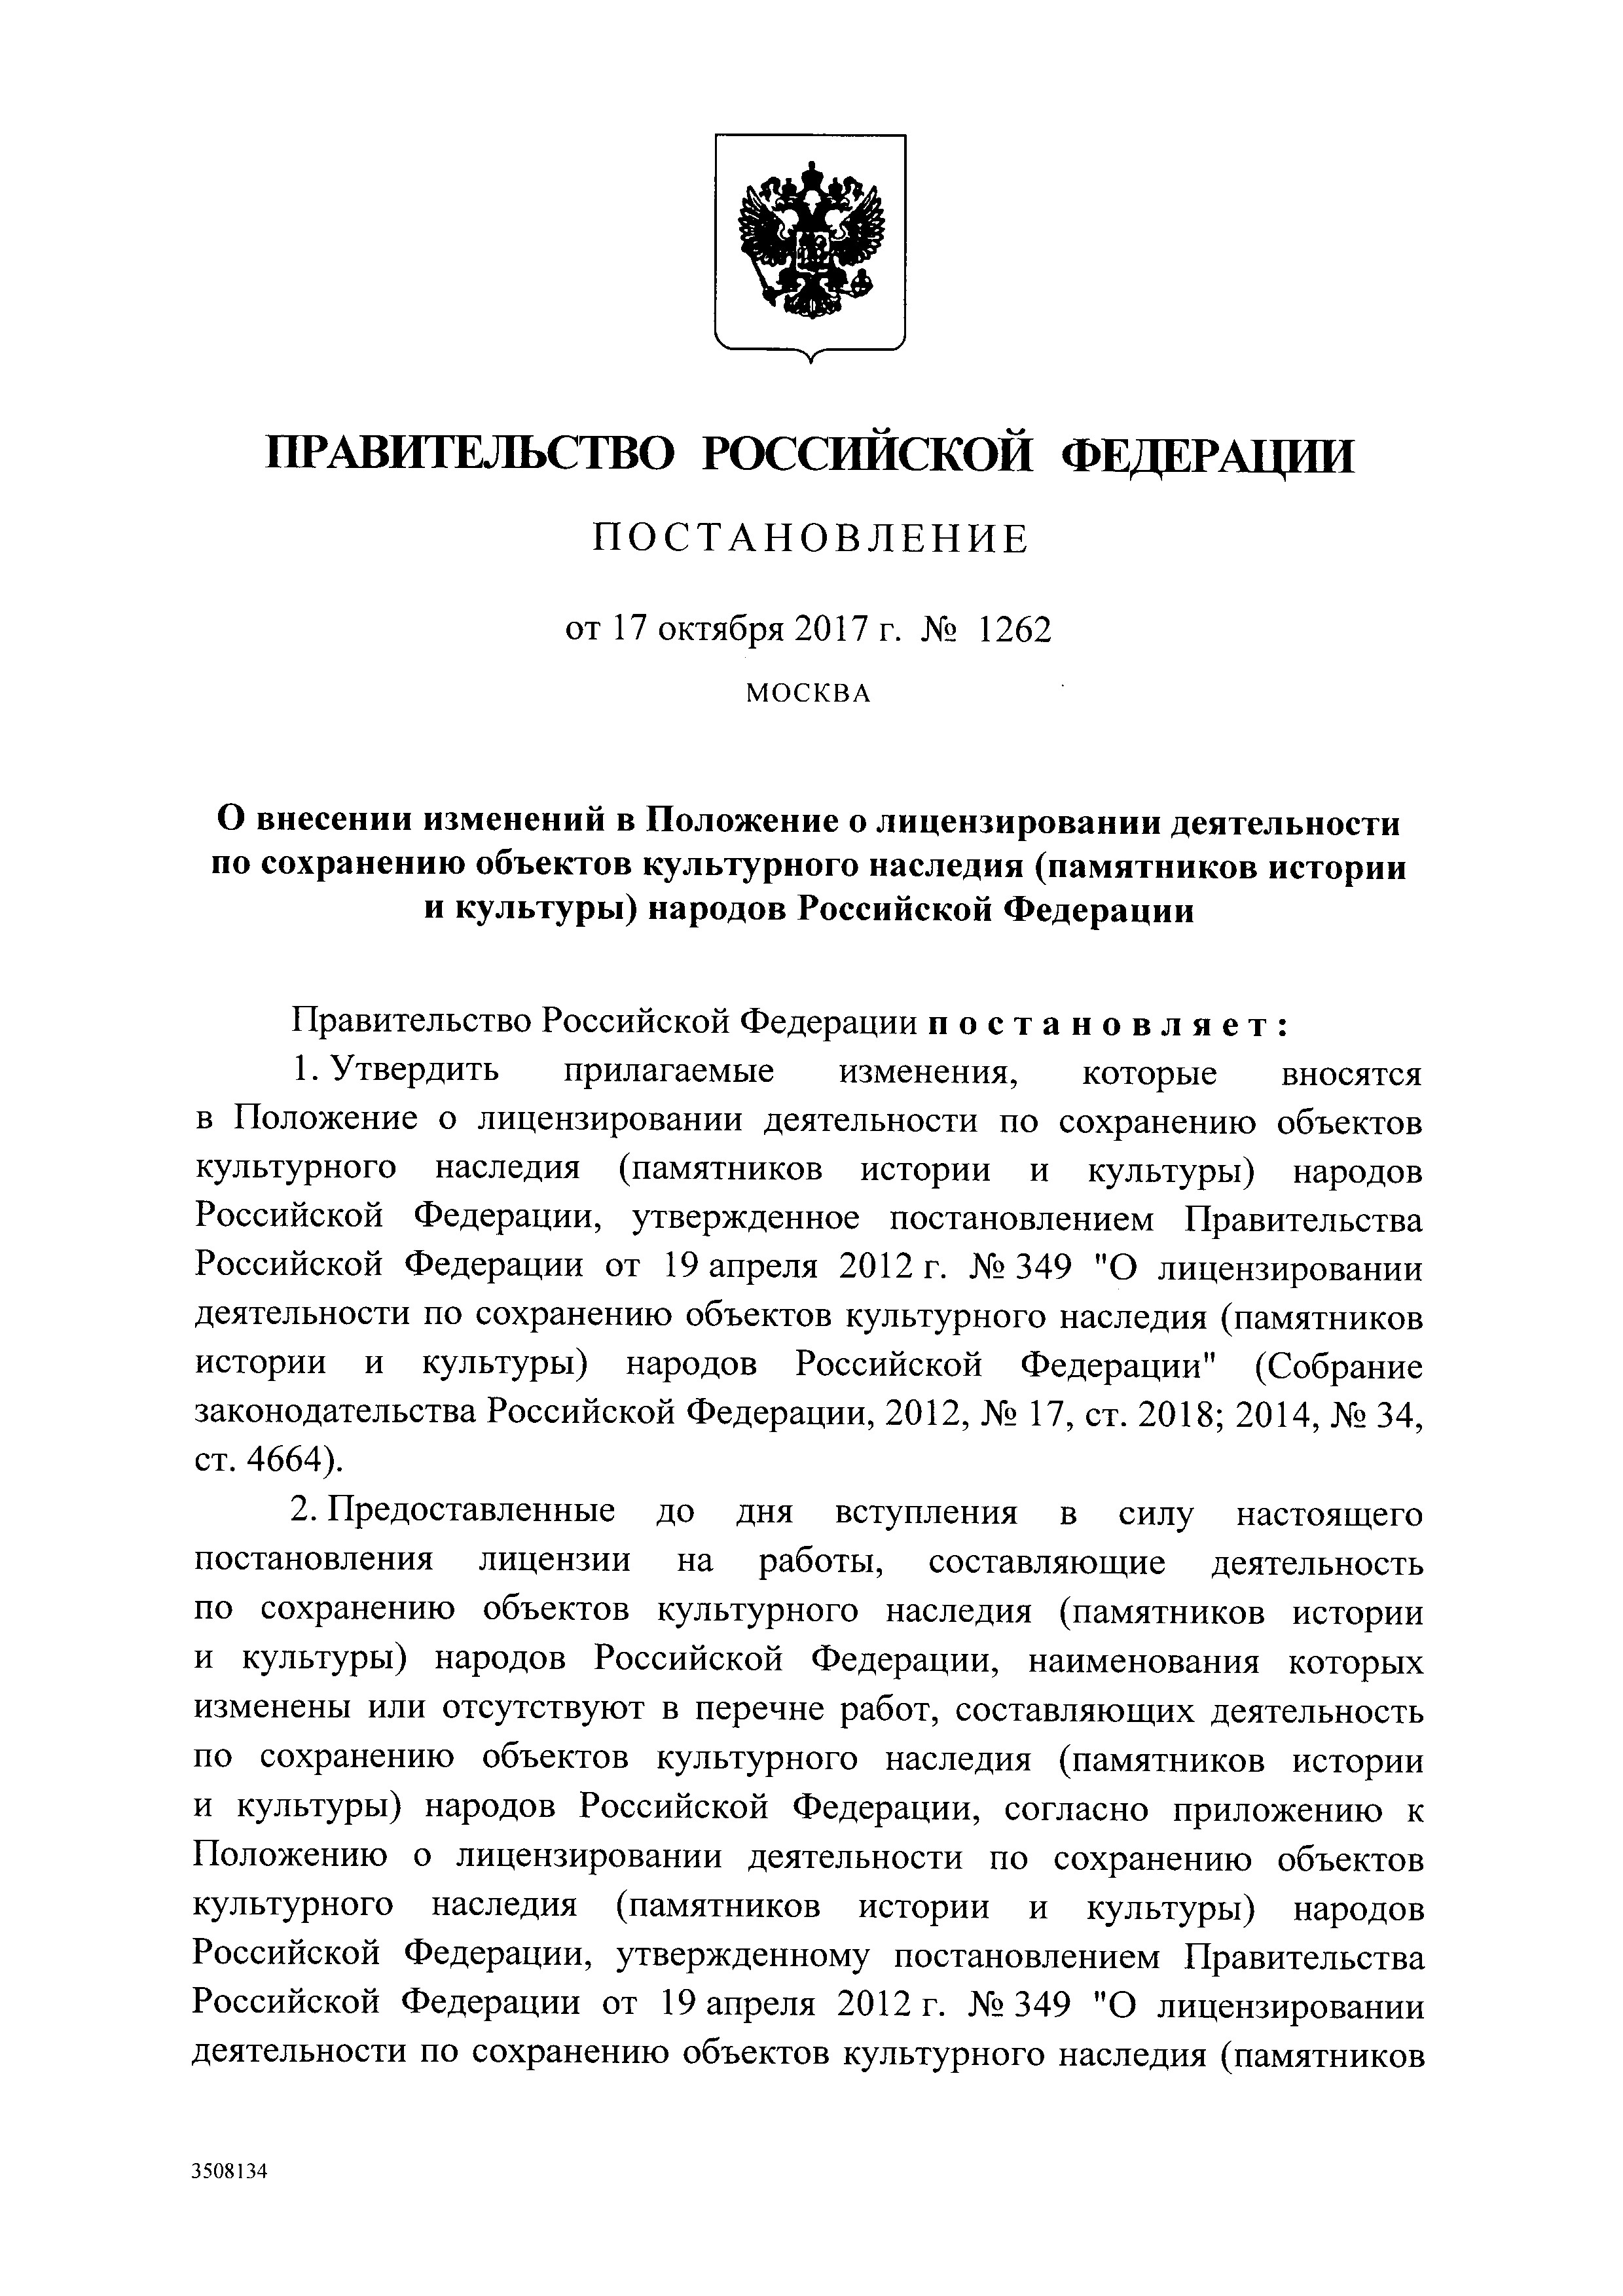 Постановление правительства 1262 от 17.10.17